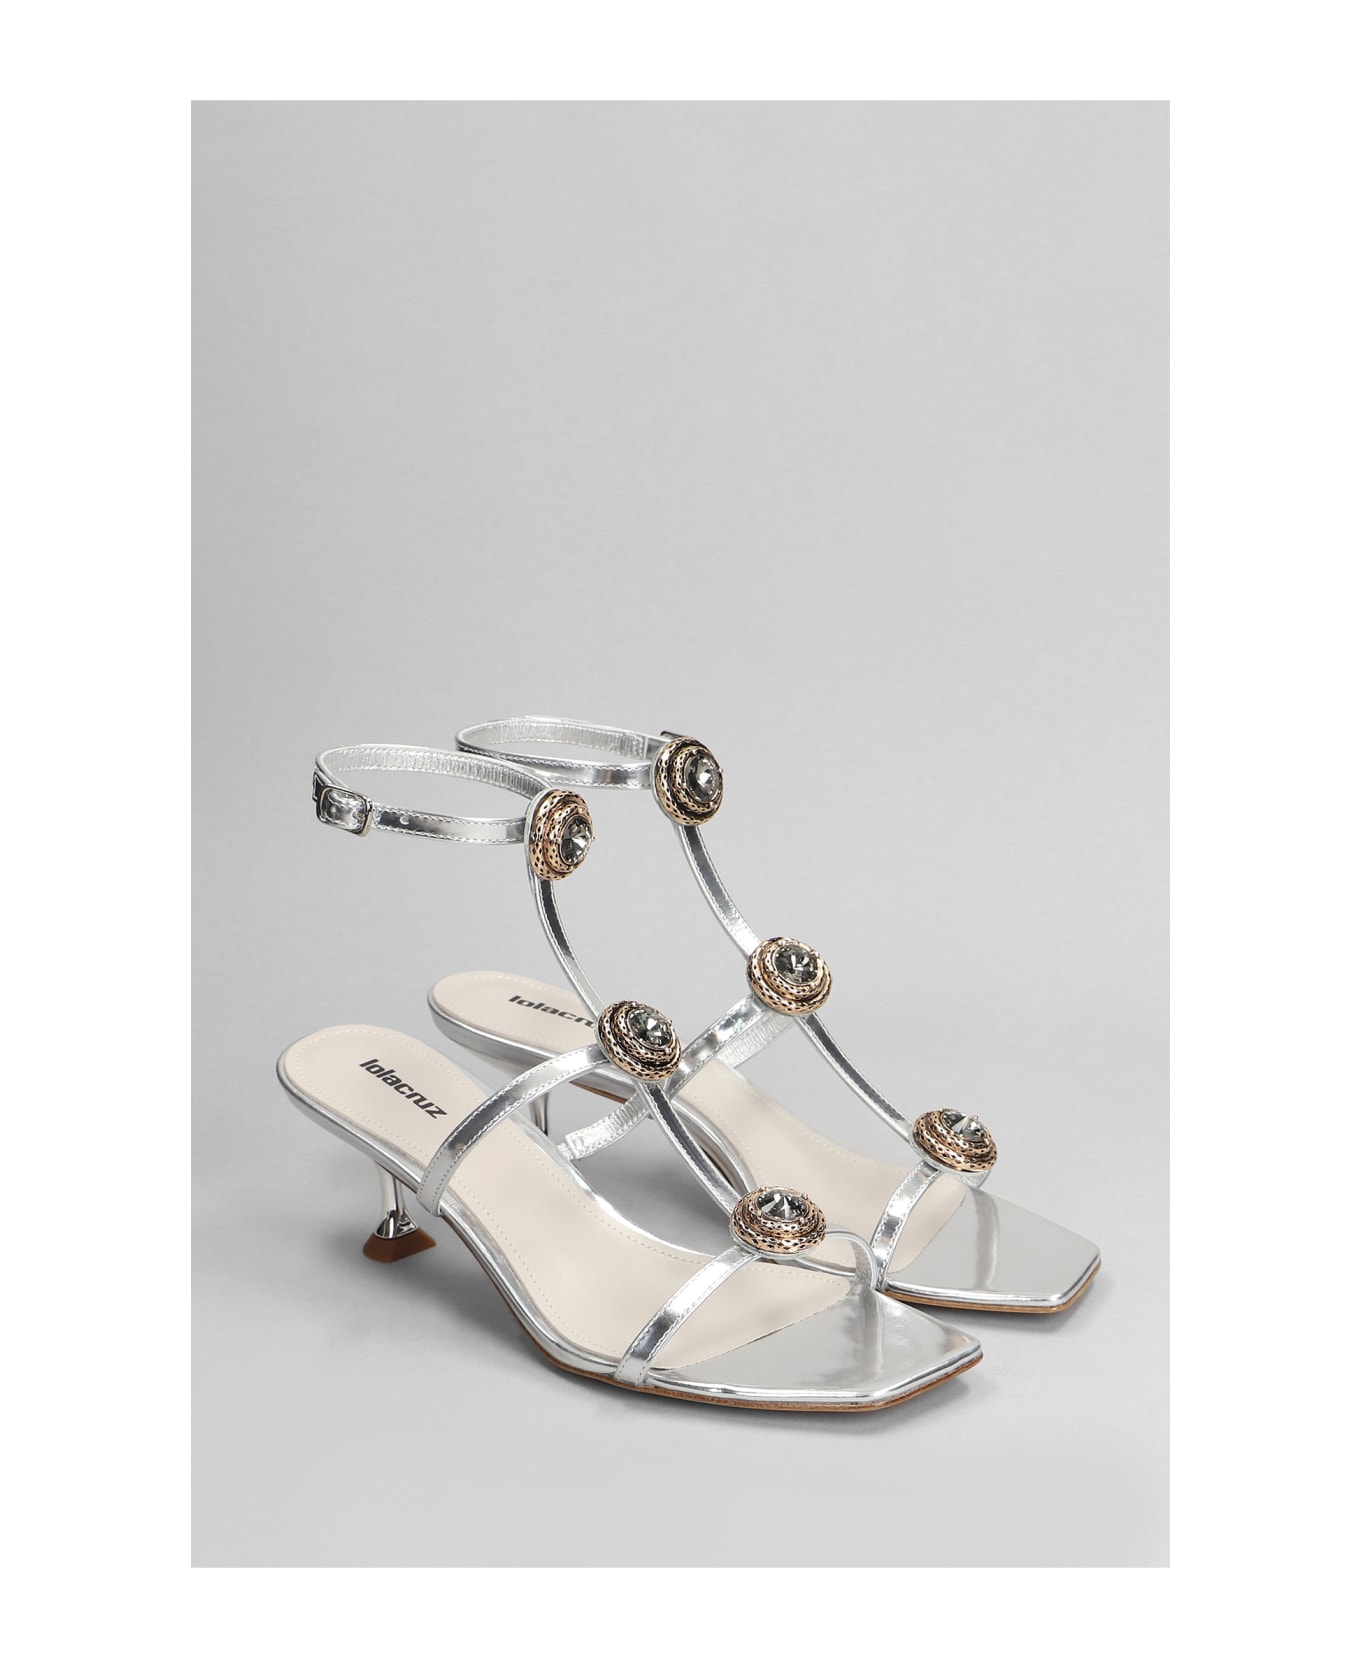 Lola Cruz Lya 95 Sandals In Silver Leather - silver